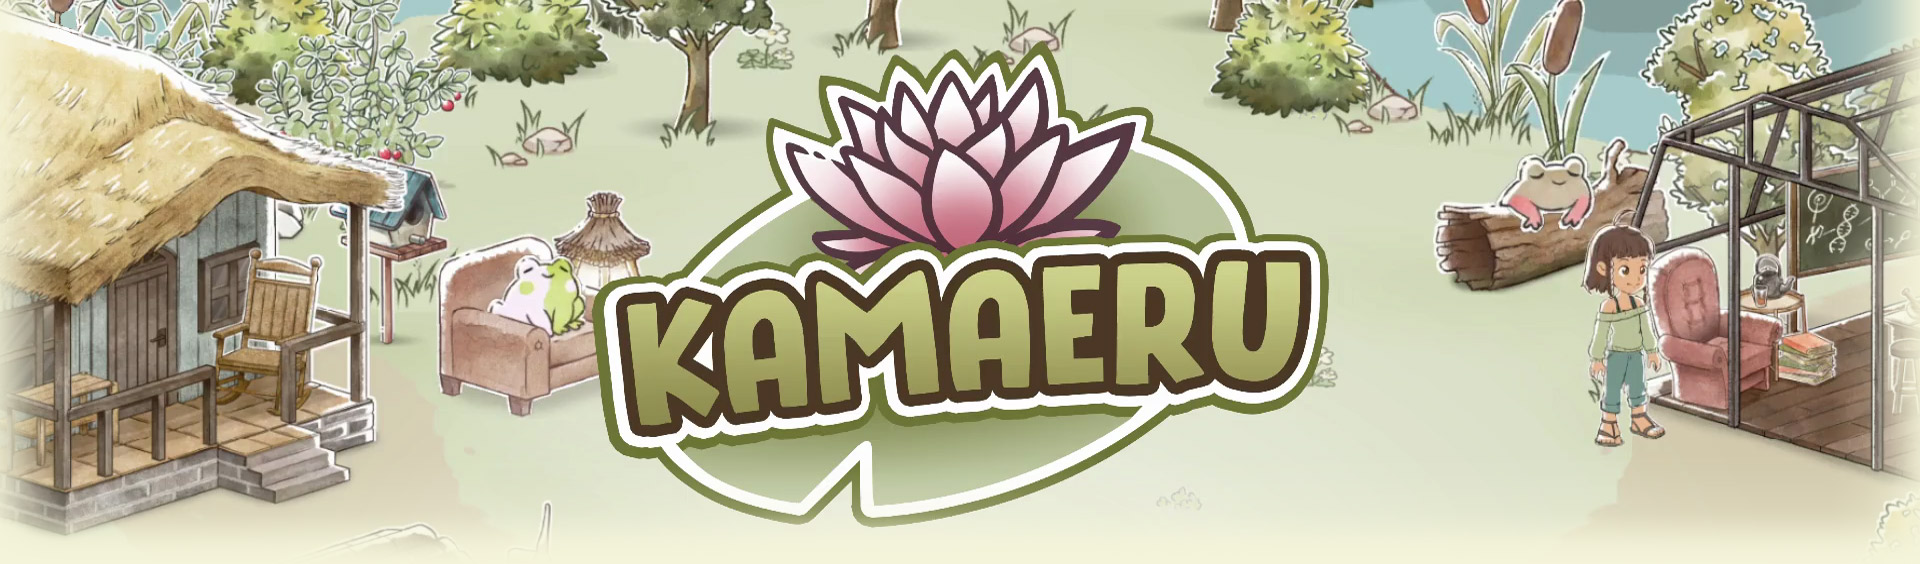 Kamaeru banner